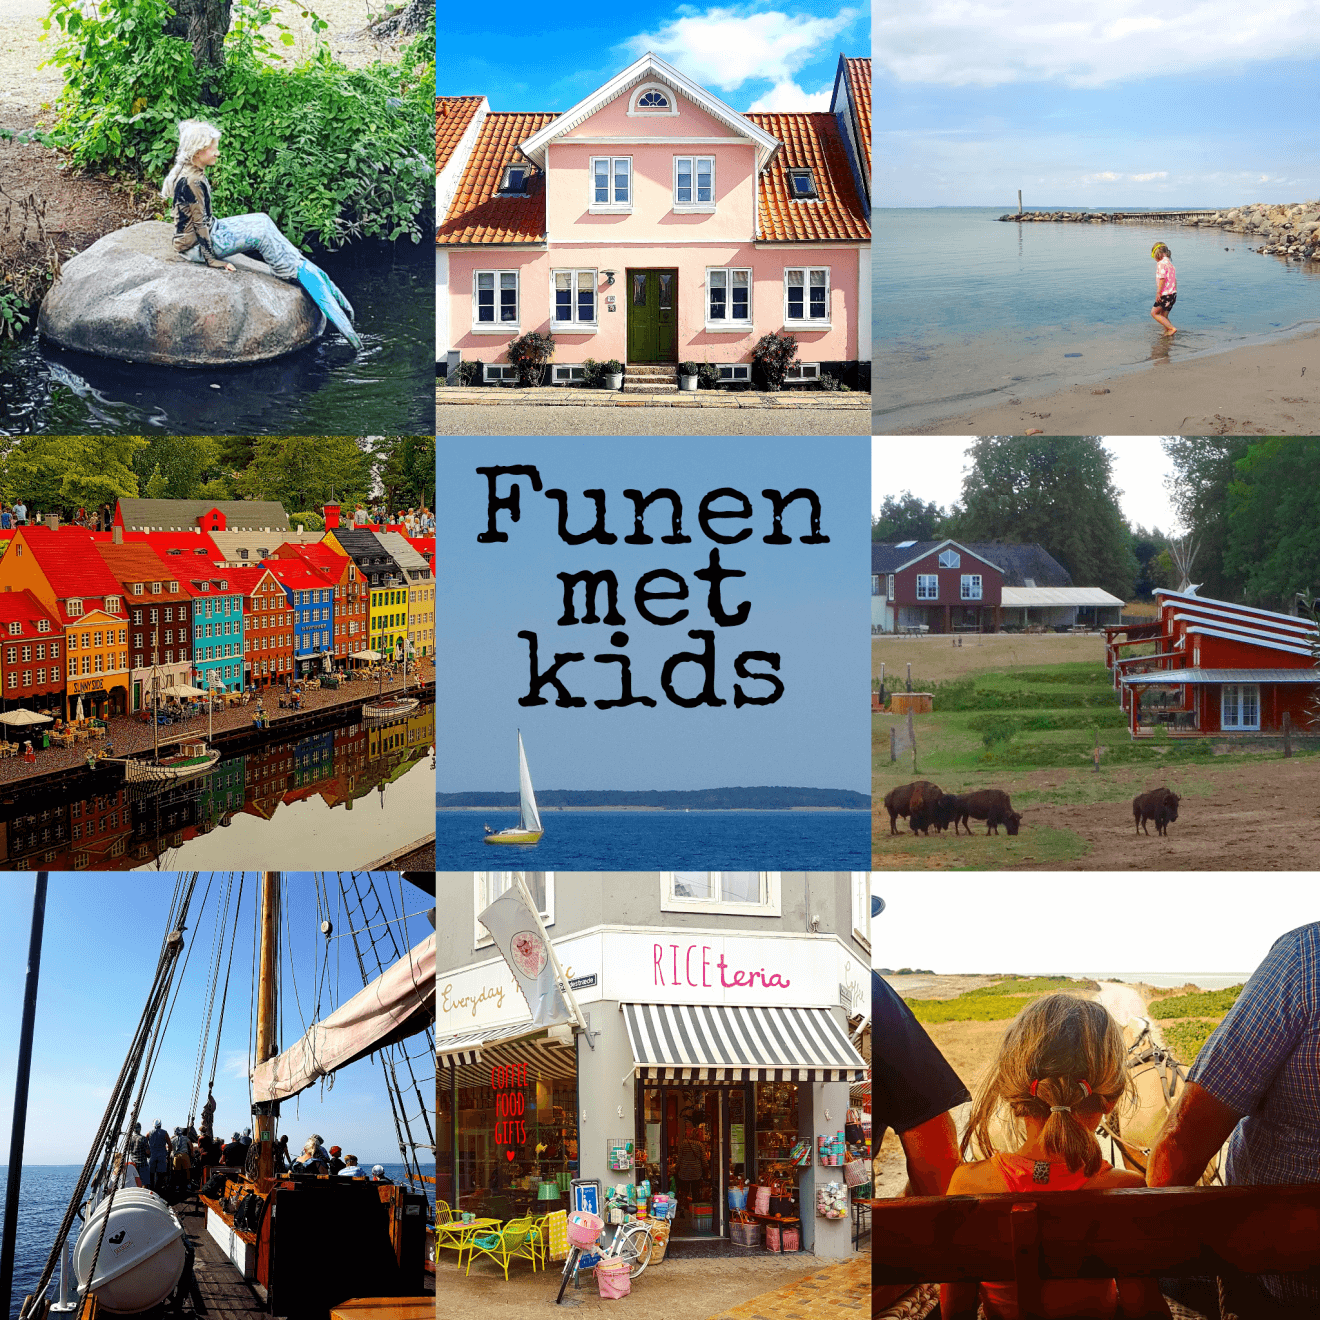 Vakantie met kids: sprookjesachtig Funen in Denemarken #leukmetkids #Denemarken #Funen